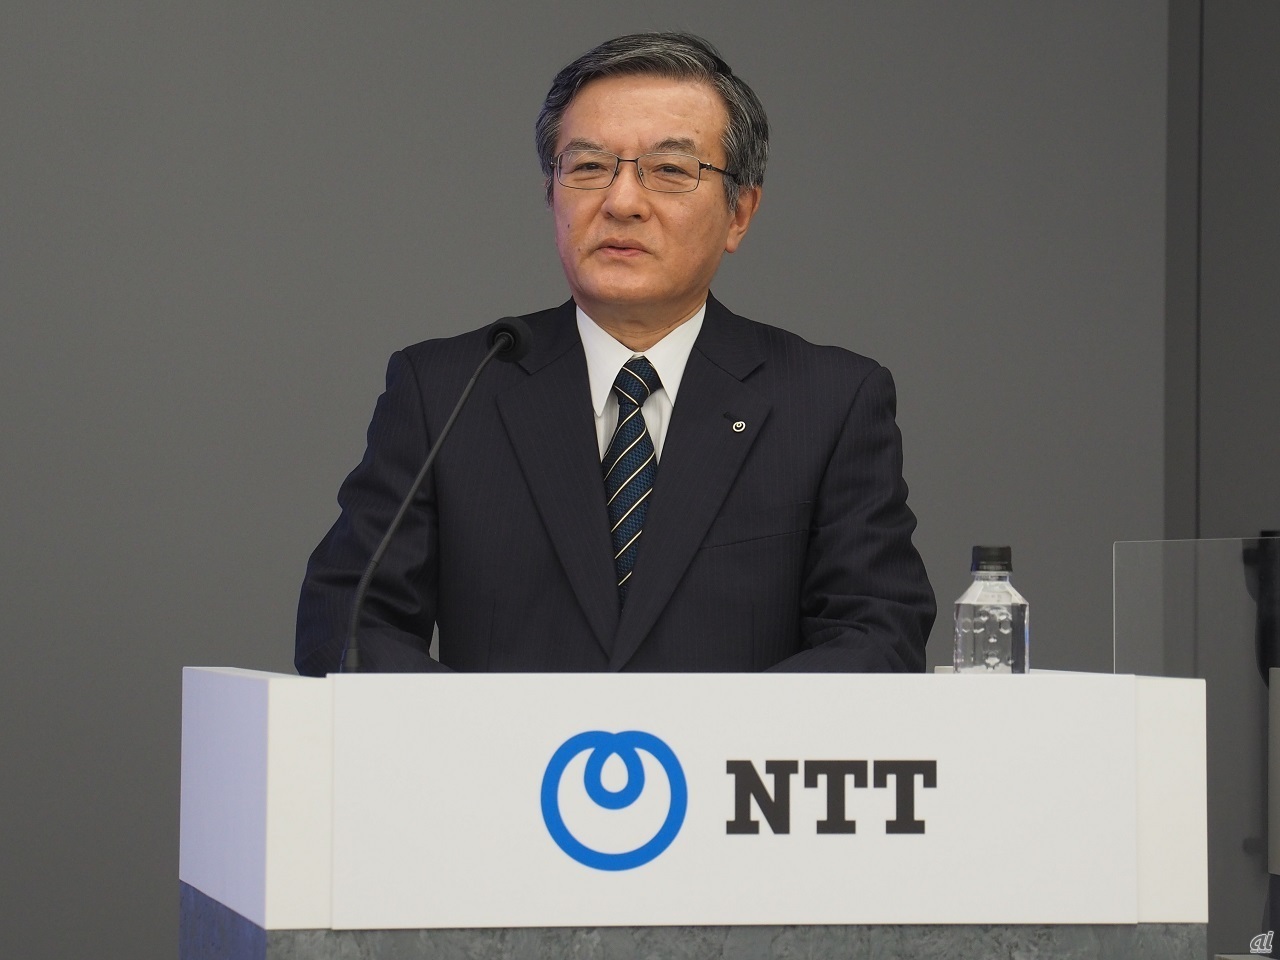 NTTの島田氏は、ドコモのバックアップ回線提供について、他の2社に大きく遅れることなく提供したいとしている